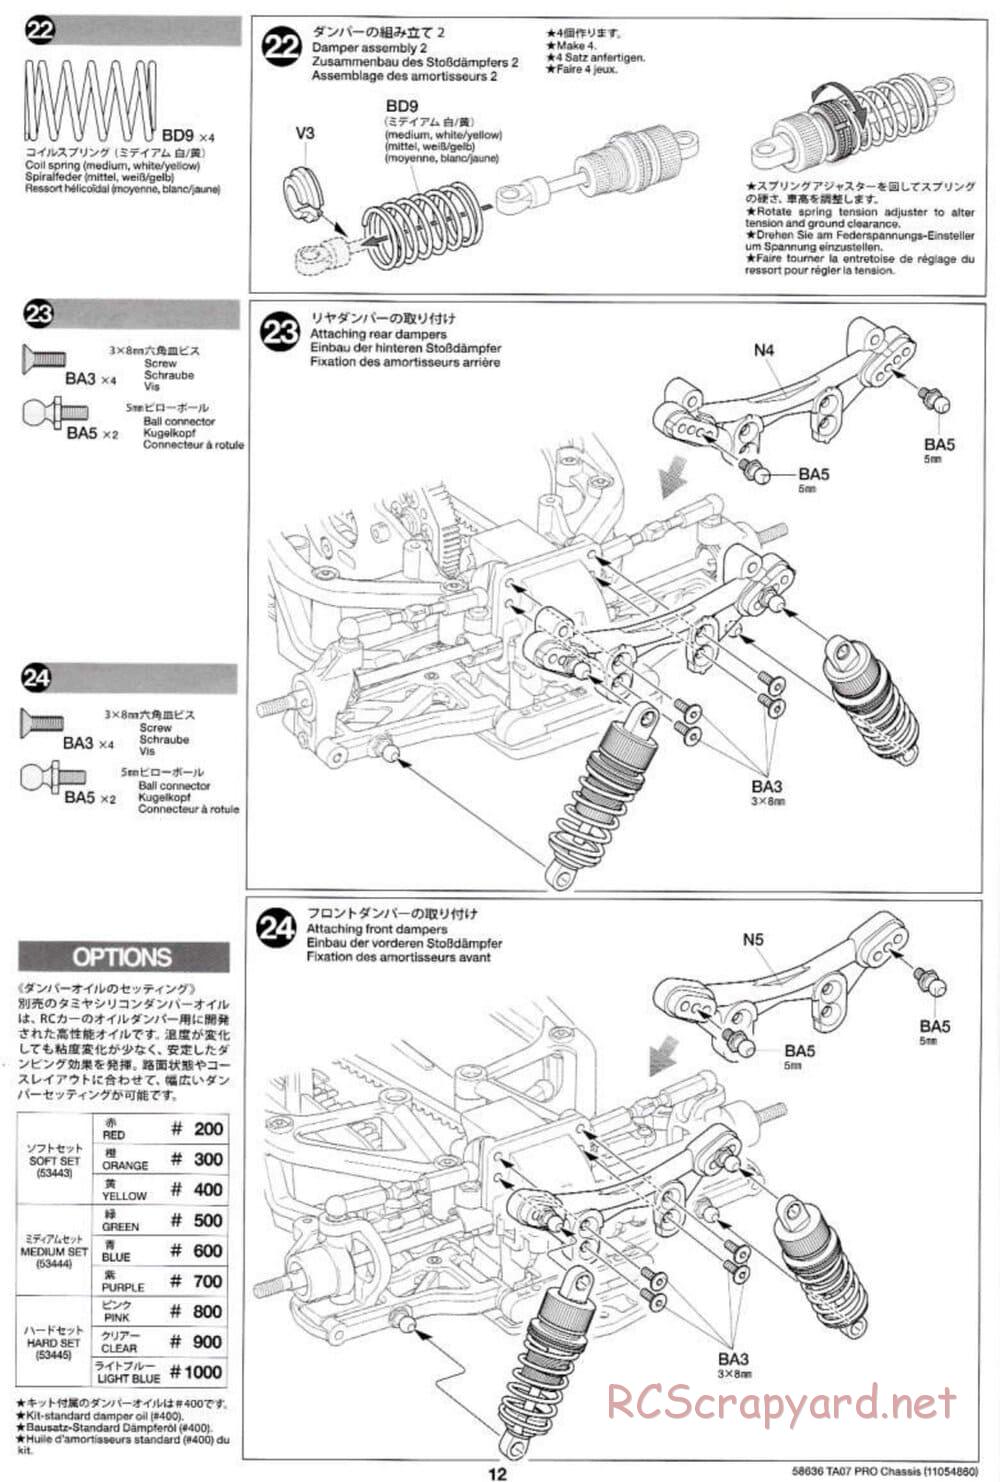 Tamiya - TA07 Pro Chassis - Manual - Page 12